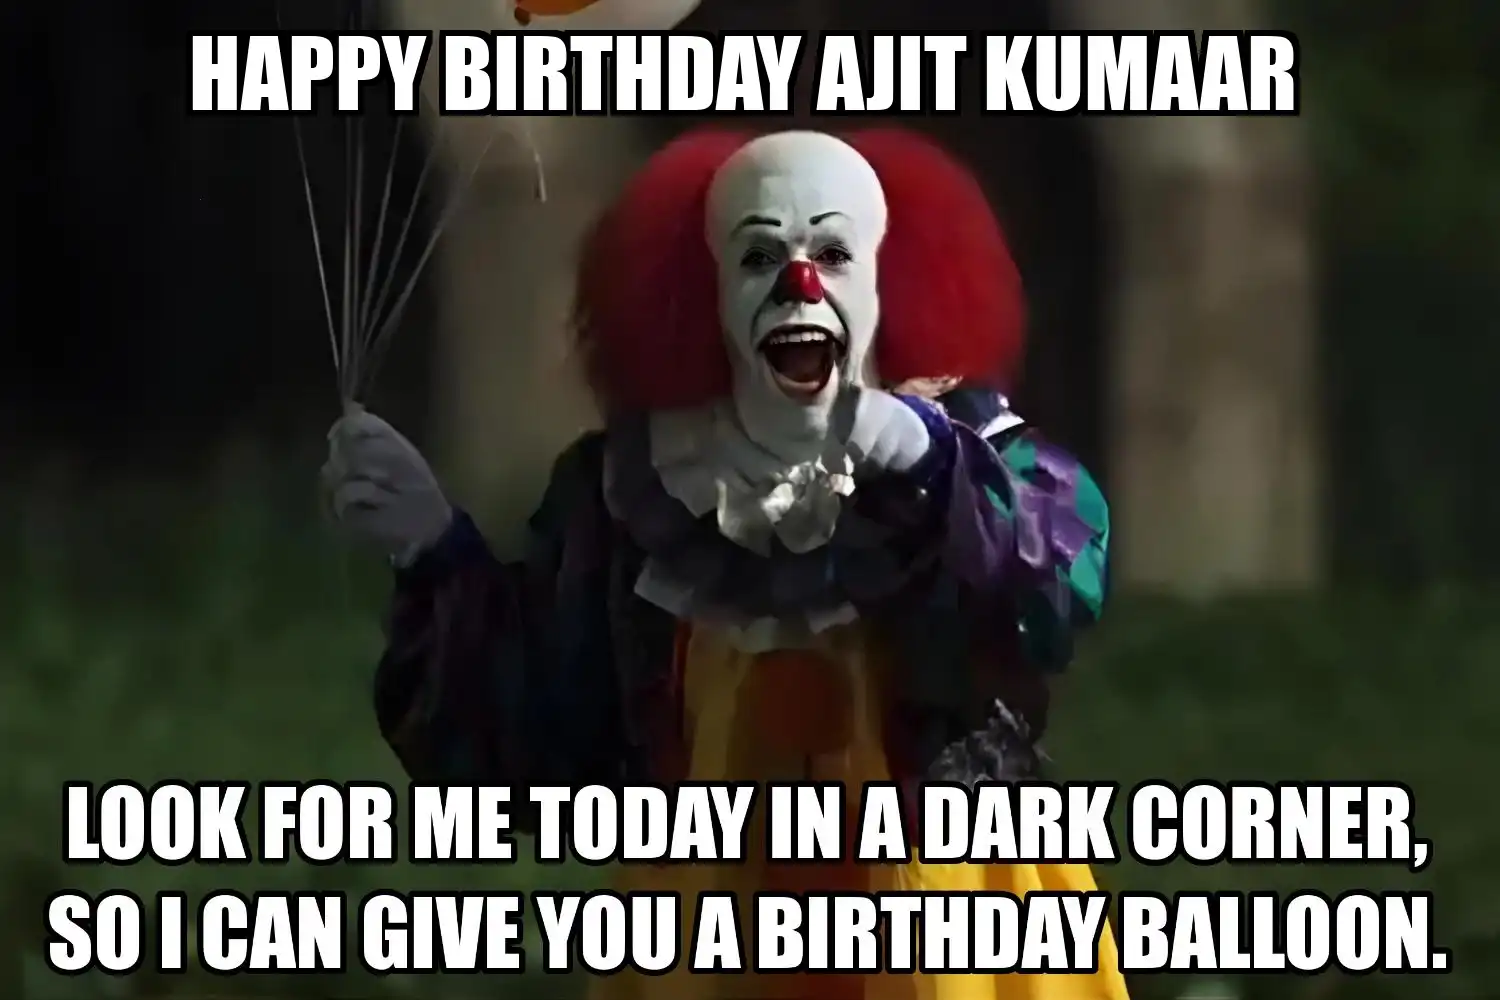 Happy Birthday Ajit Kumaar I Can Give You A Balloon Meme